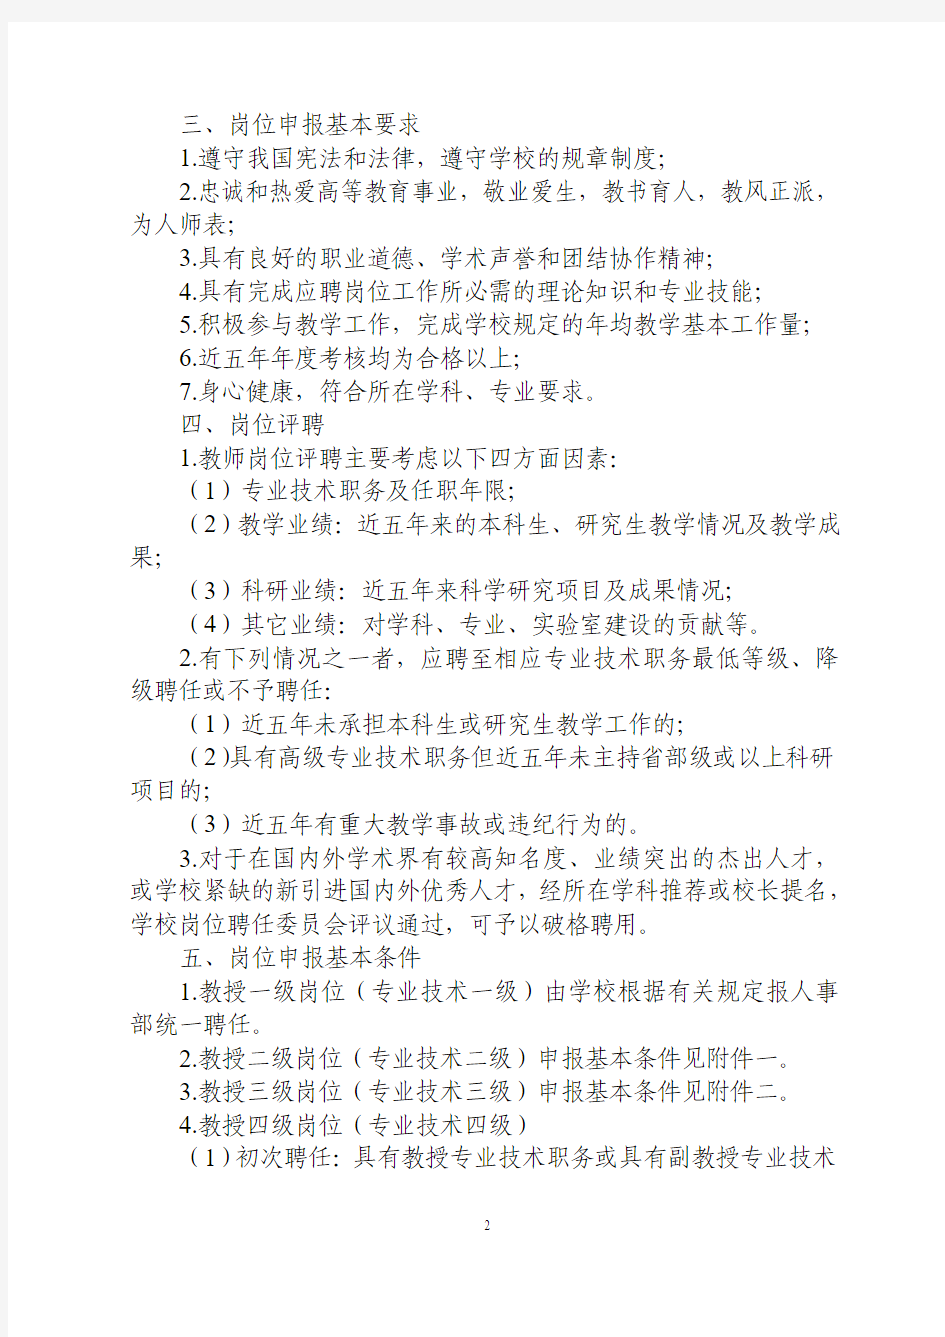 《中国海洋大学教师岗位设置管理与聘任实施细则》(海大人字〔2007〕122号)